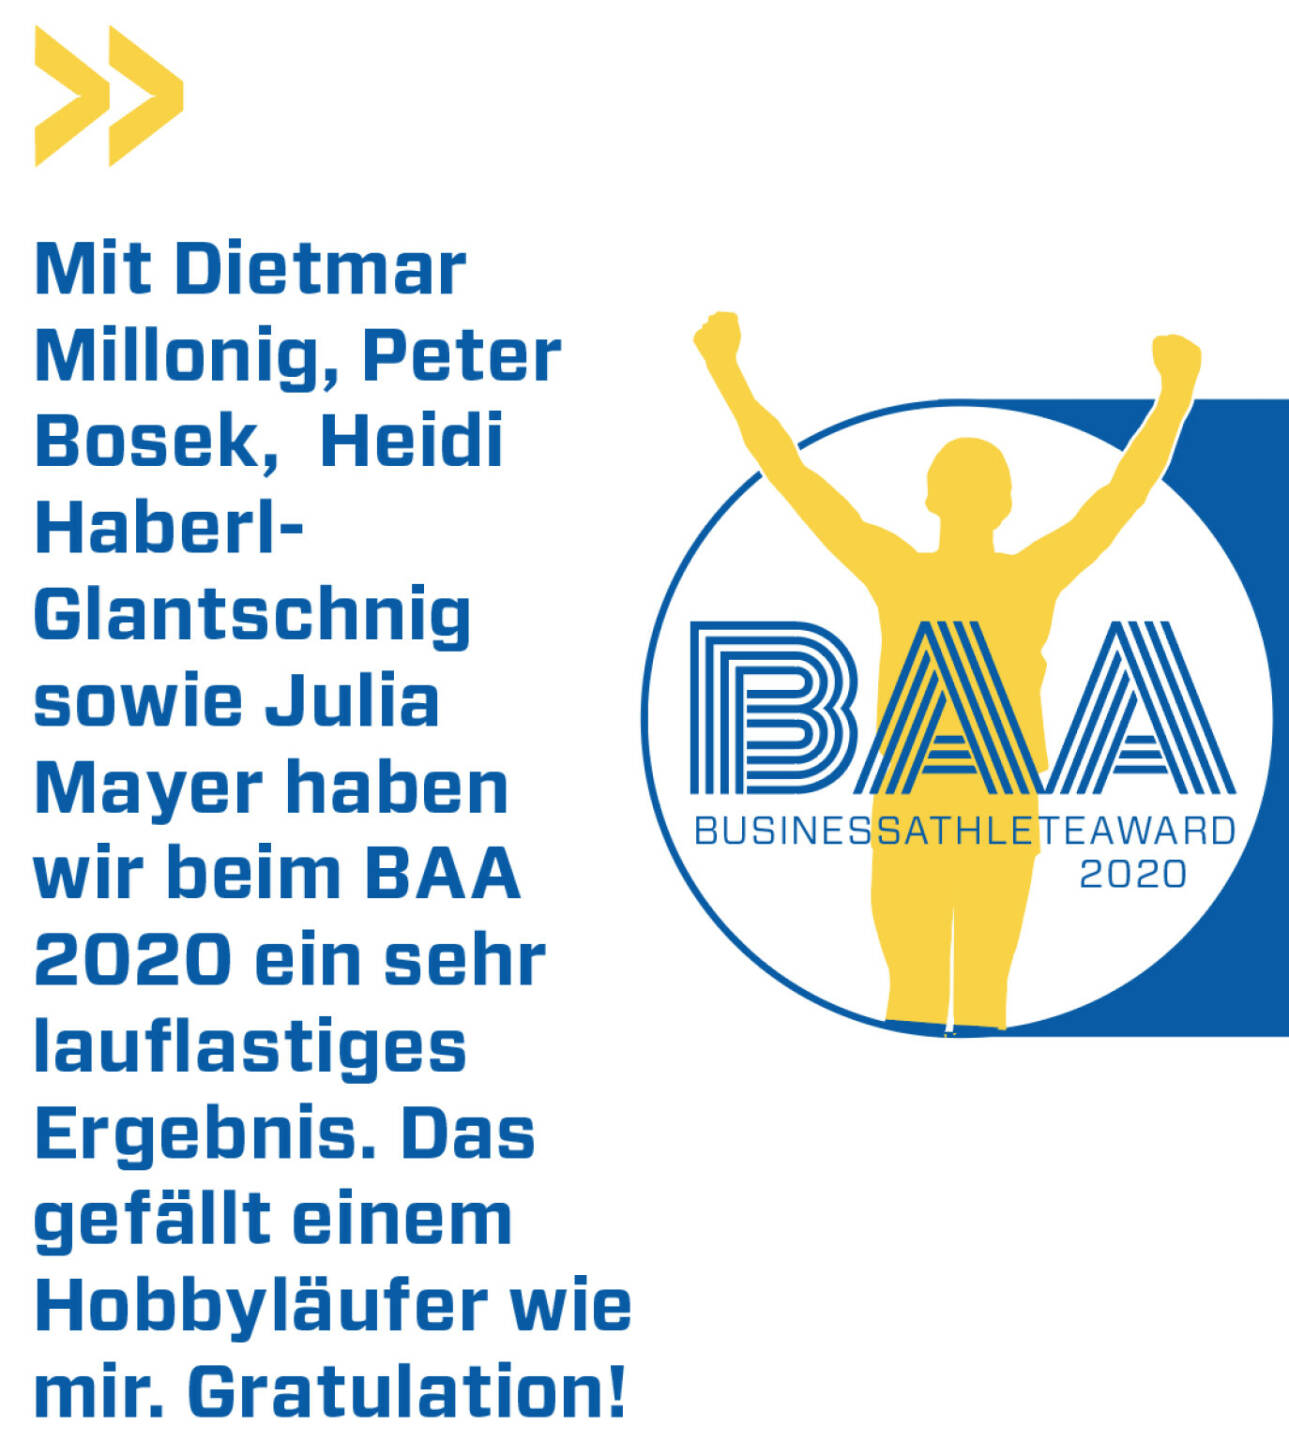 Mit Dietmar Millonig, Peter Bosek,  Heidi Haberl-Glantschnig sowie Julia Mayer haben wir beim BAA 2020 ein sehr lauflastiges Ergebnis. Das gefällt einem Hobbyläufer wie mir. Gratulation!
Christian Drastil
